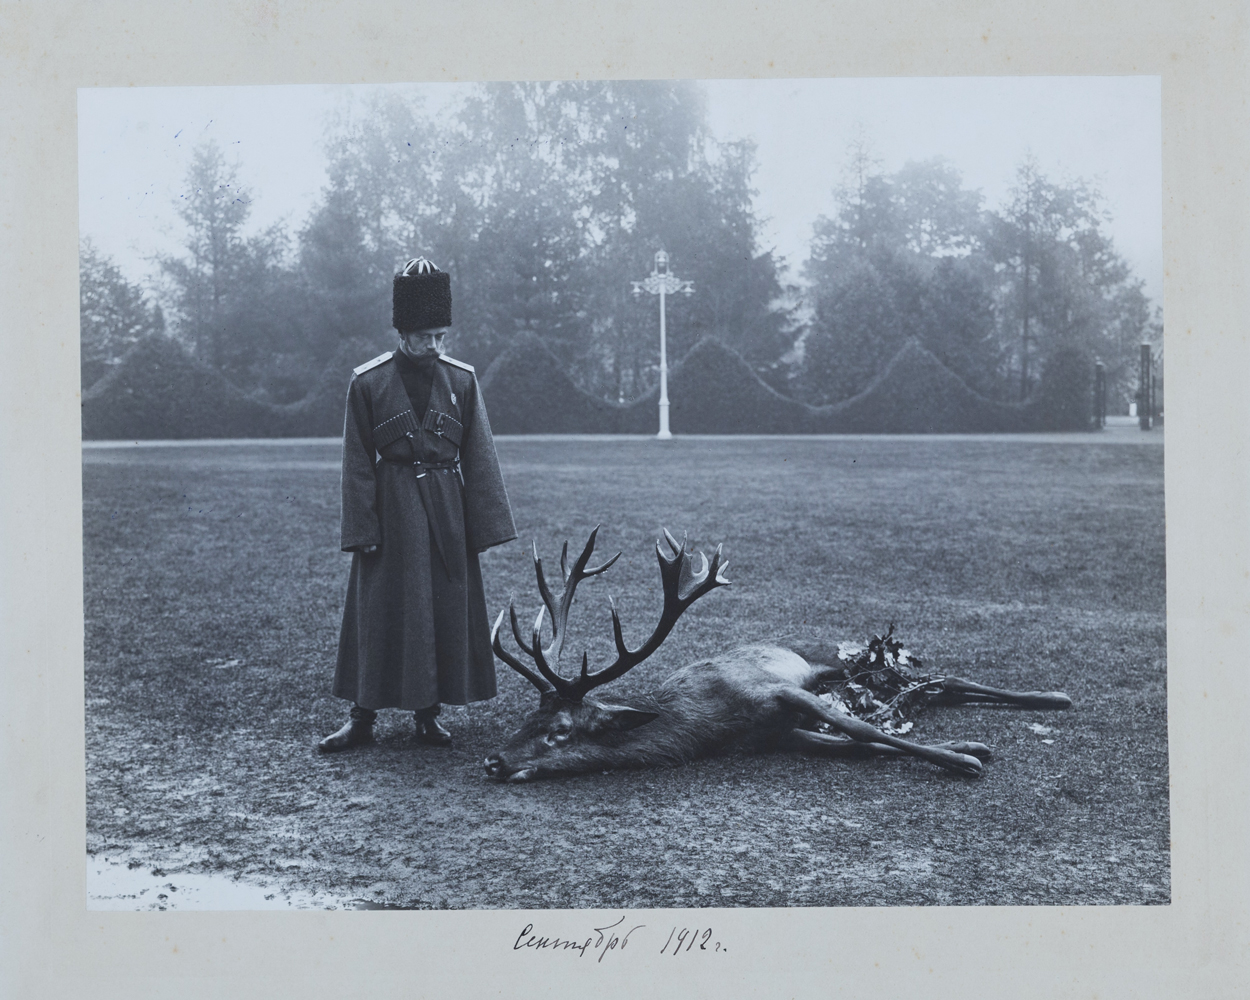 Ателье «К.Е. фон Ган и Кº» (работало в 1891–1916 гг.). Император Николай II около убитого оленя. Царское Село. 1912 г. Желатино-серебряный отпечаток